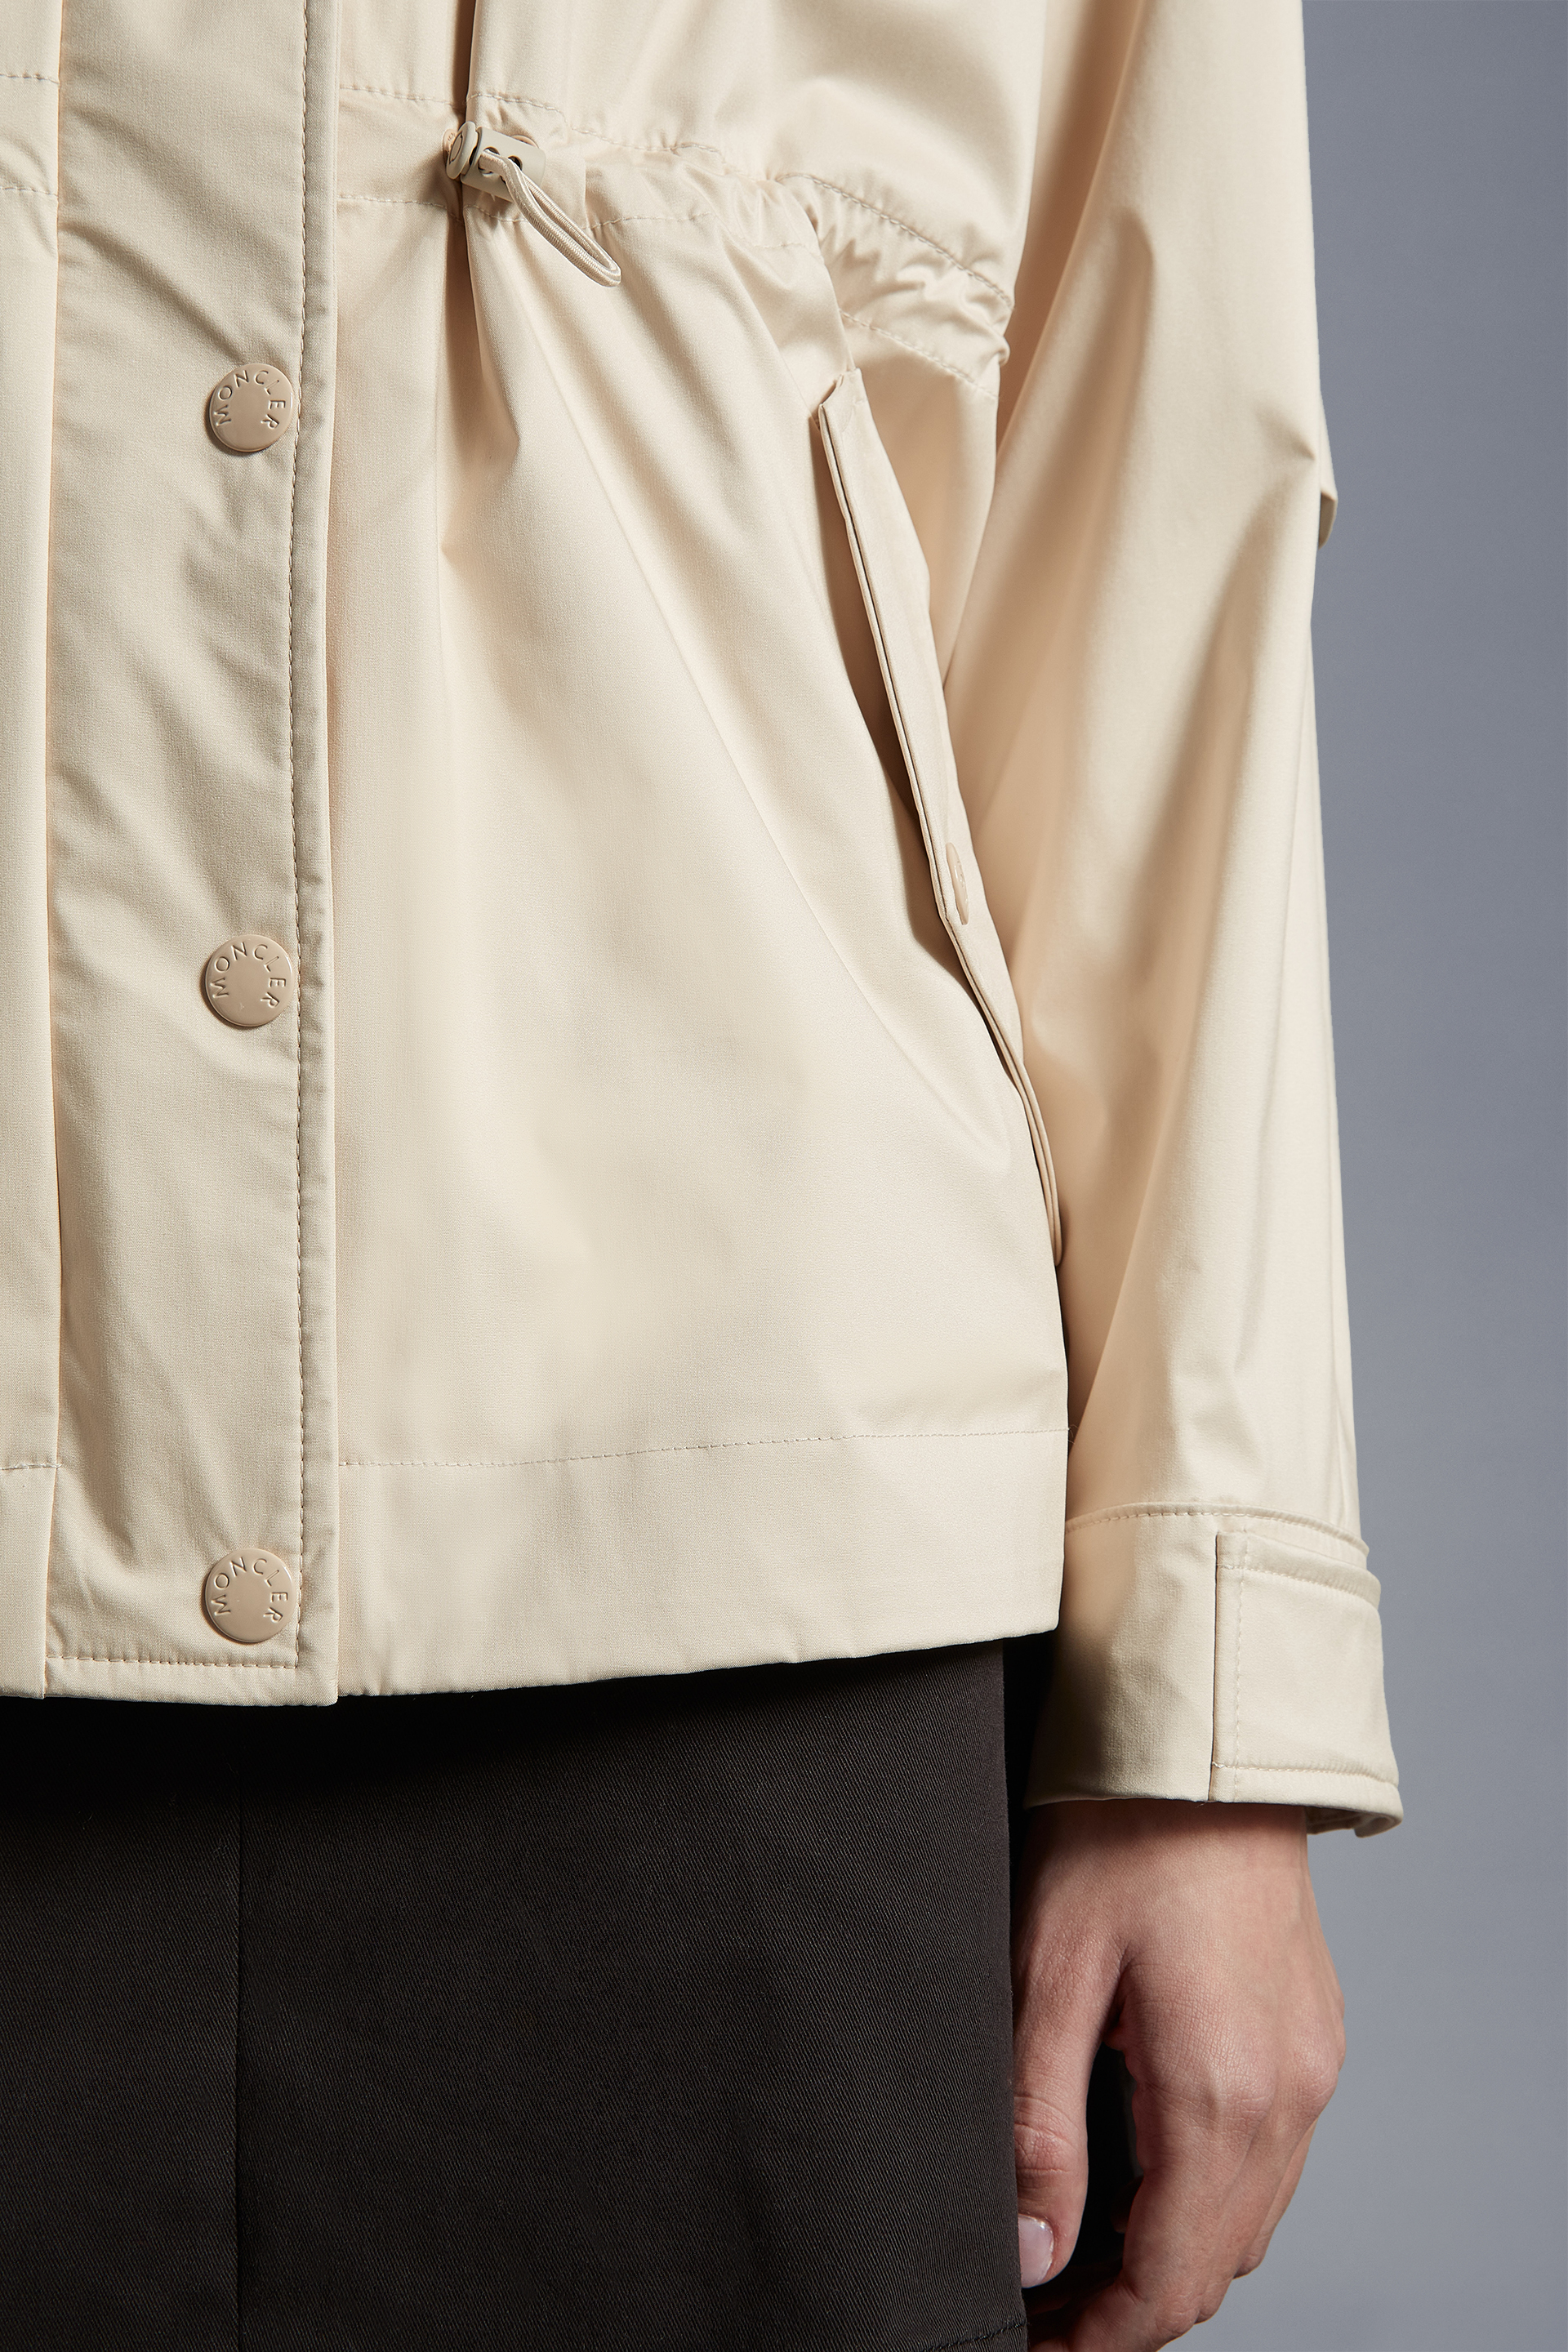 春季新品Valiere女士派克大衣象牙白– 薄款外套和风衣– 女装| Moncler 